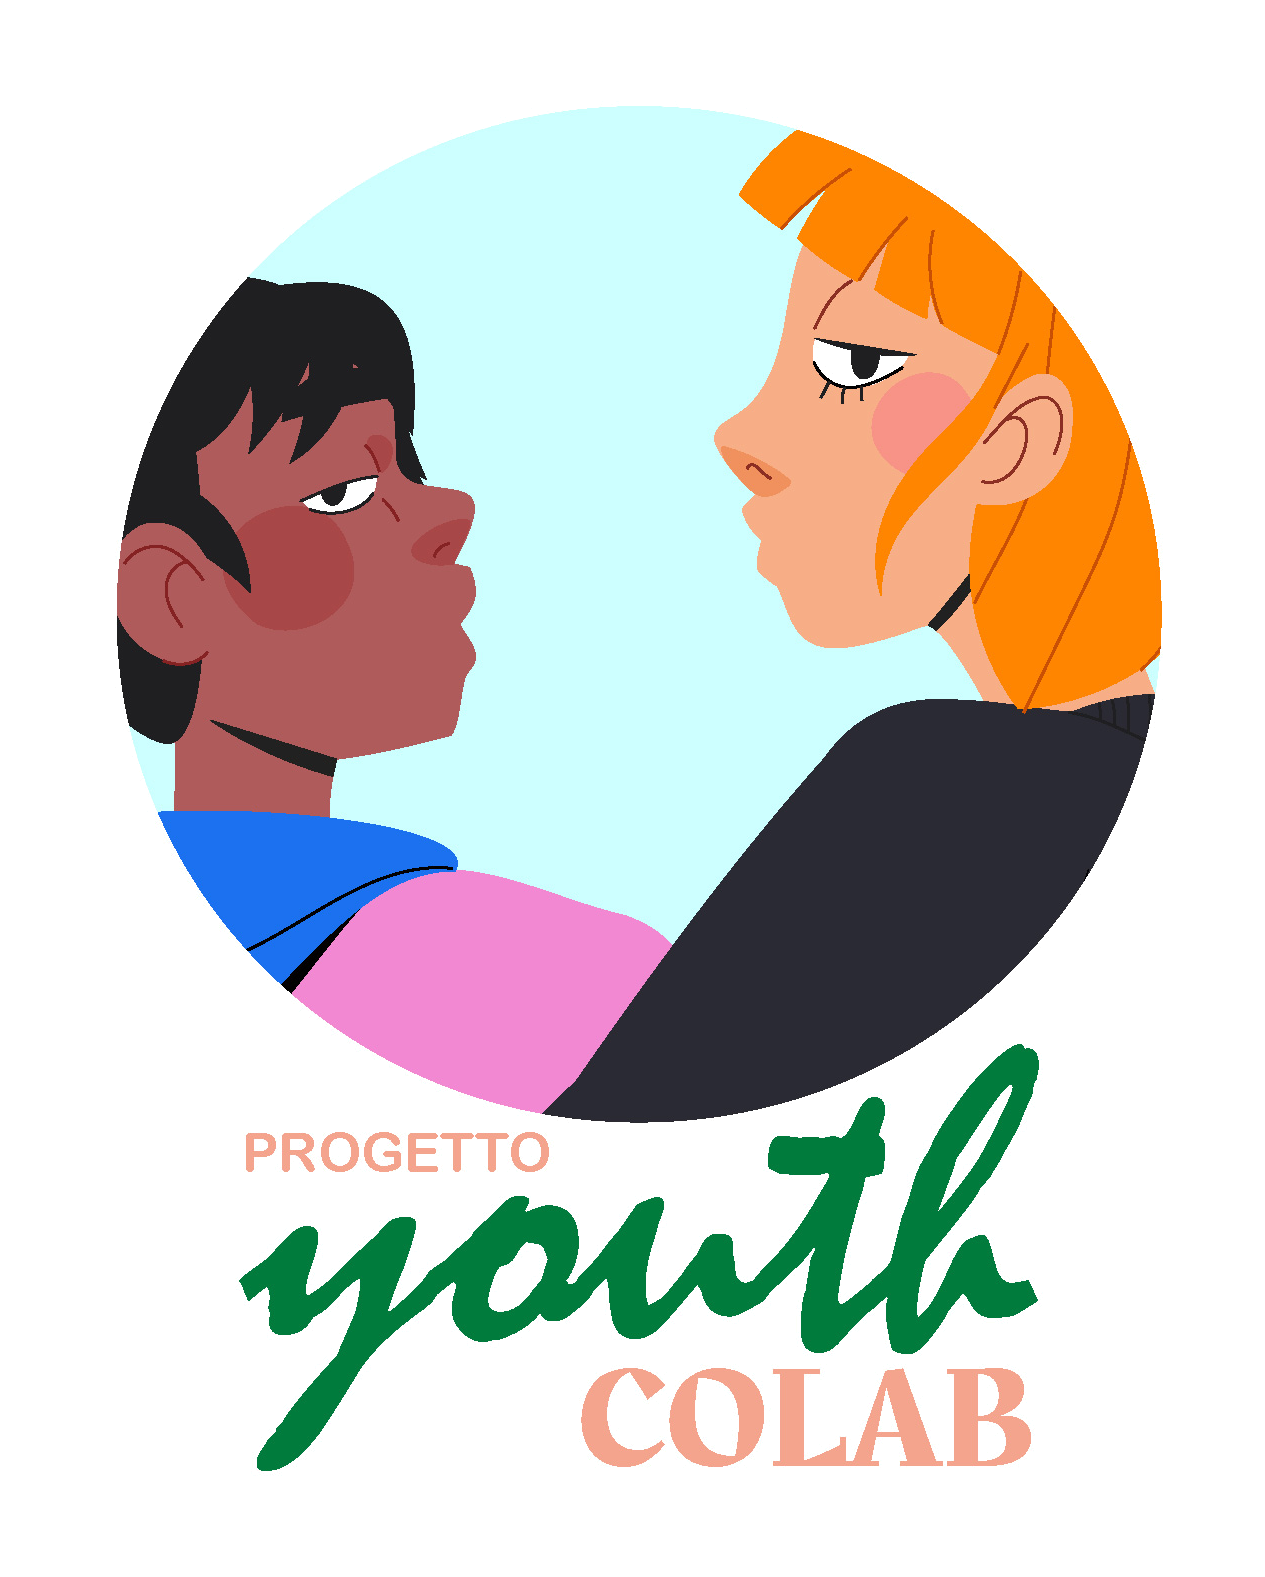 Youth CoLab • Brescia